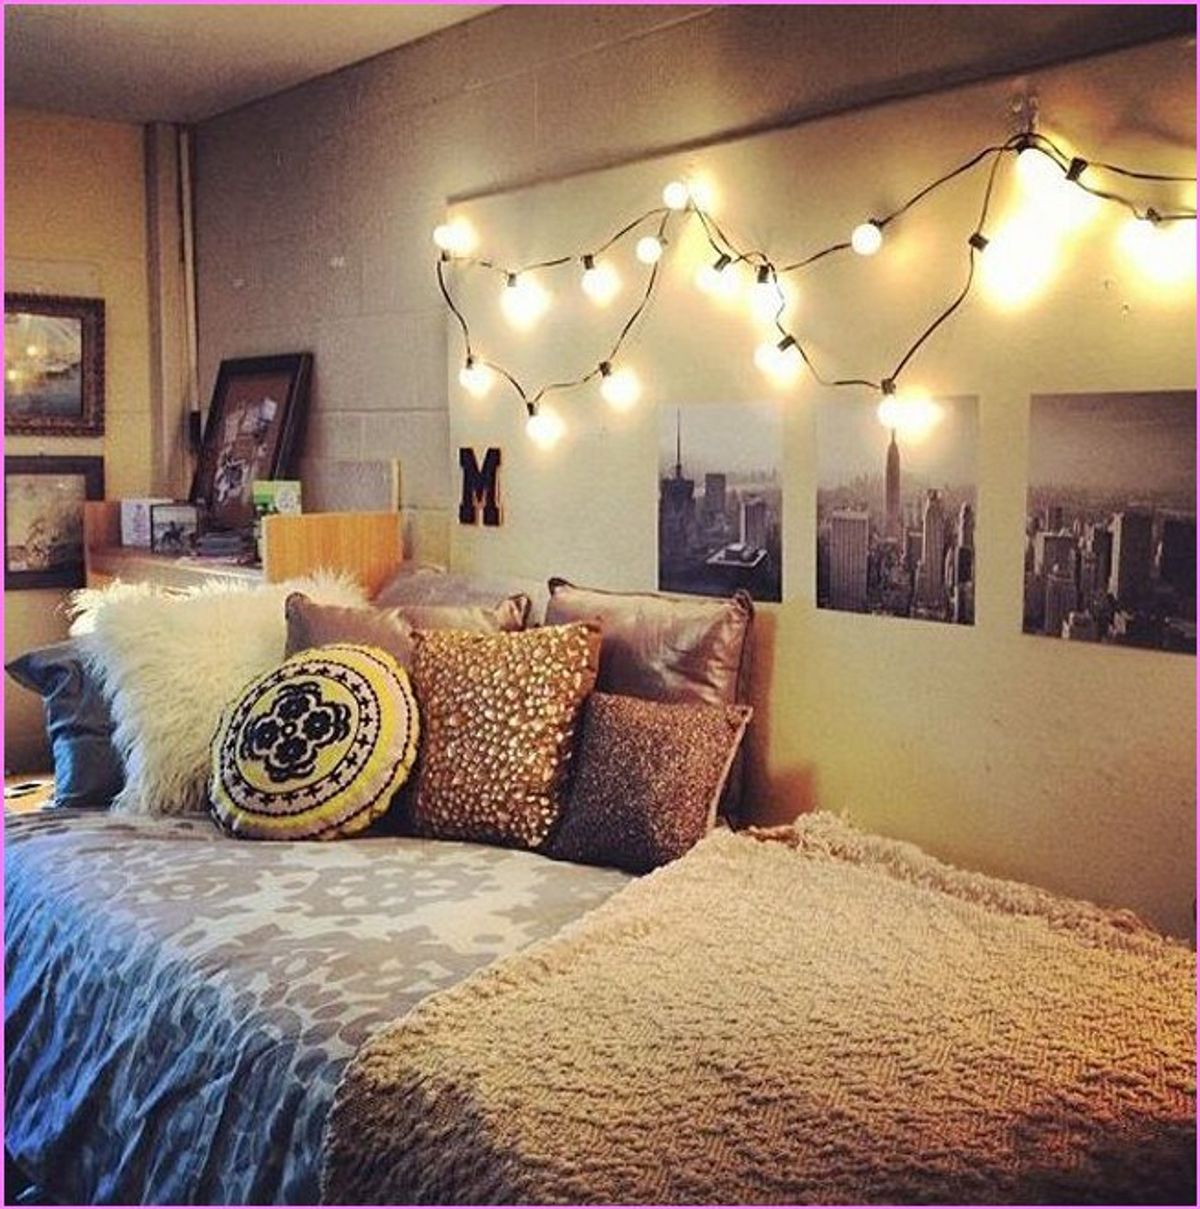 3 Ways To Brighten Your Dorm Room